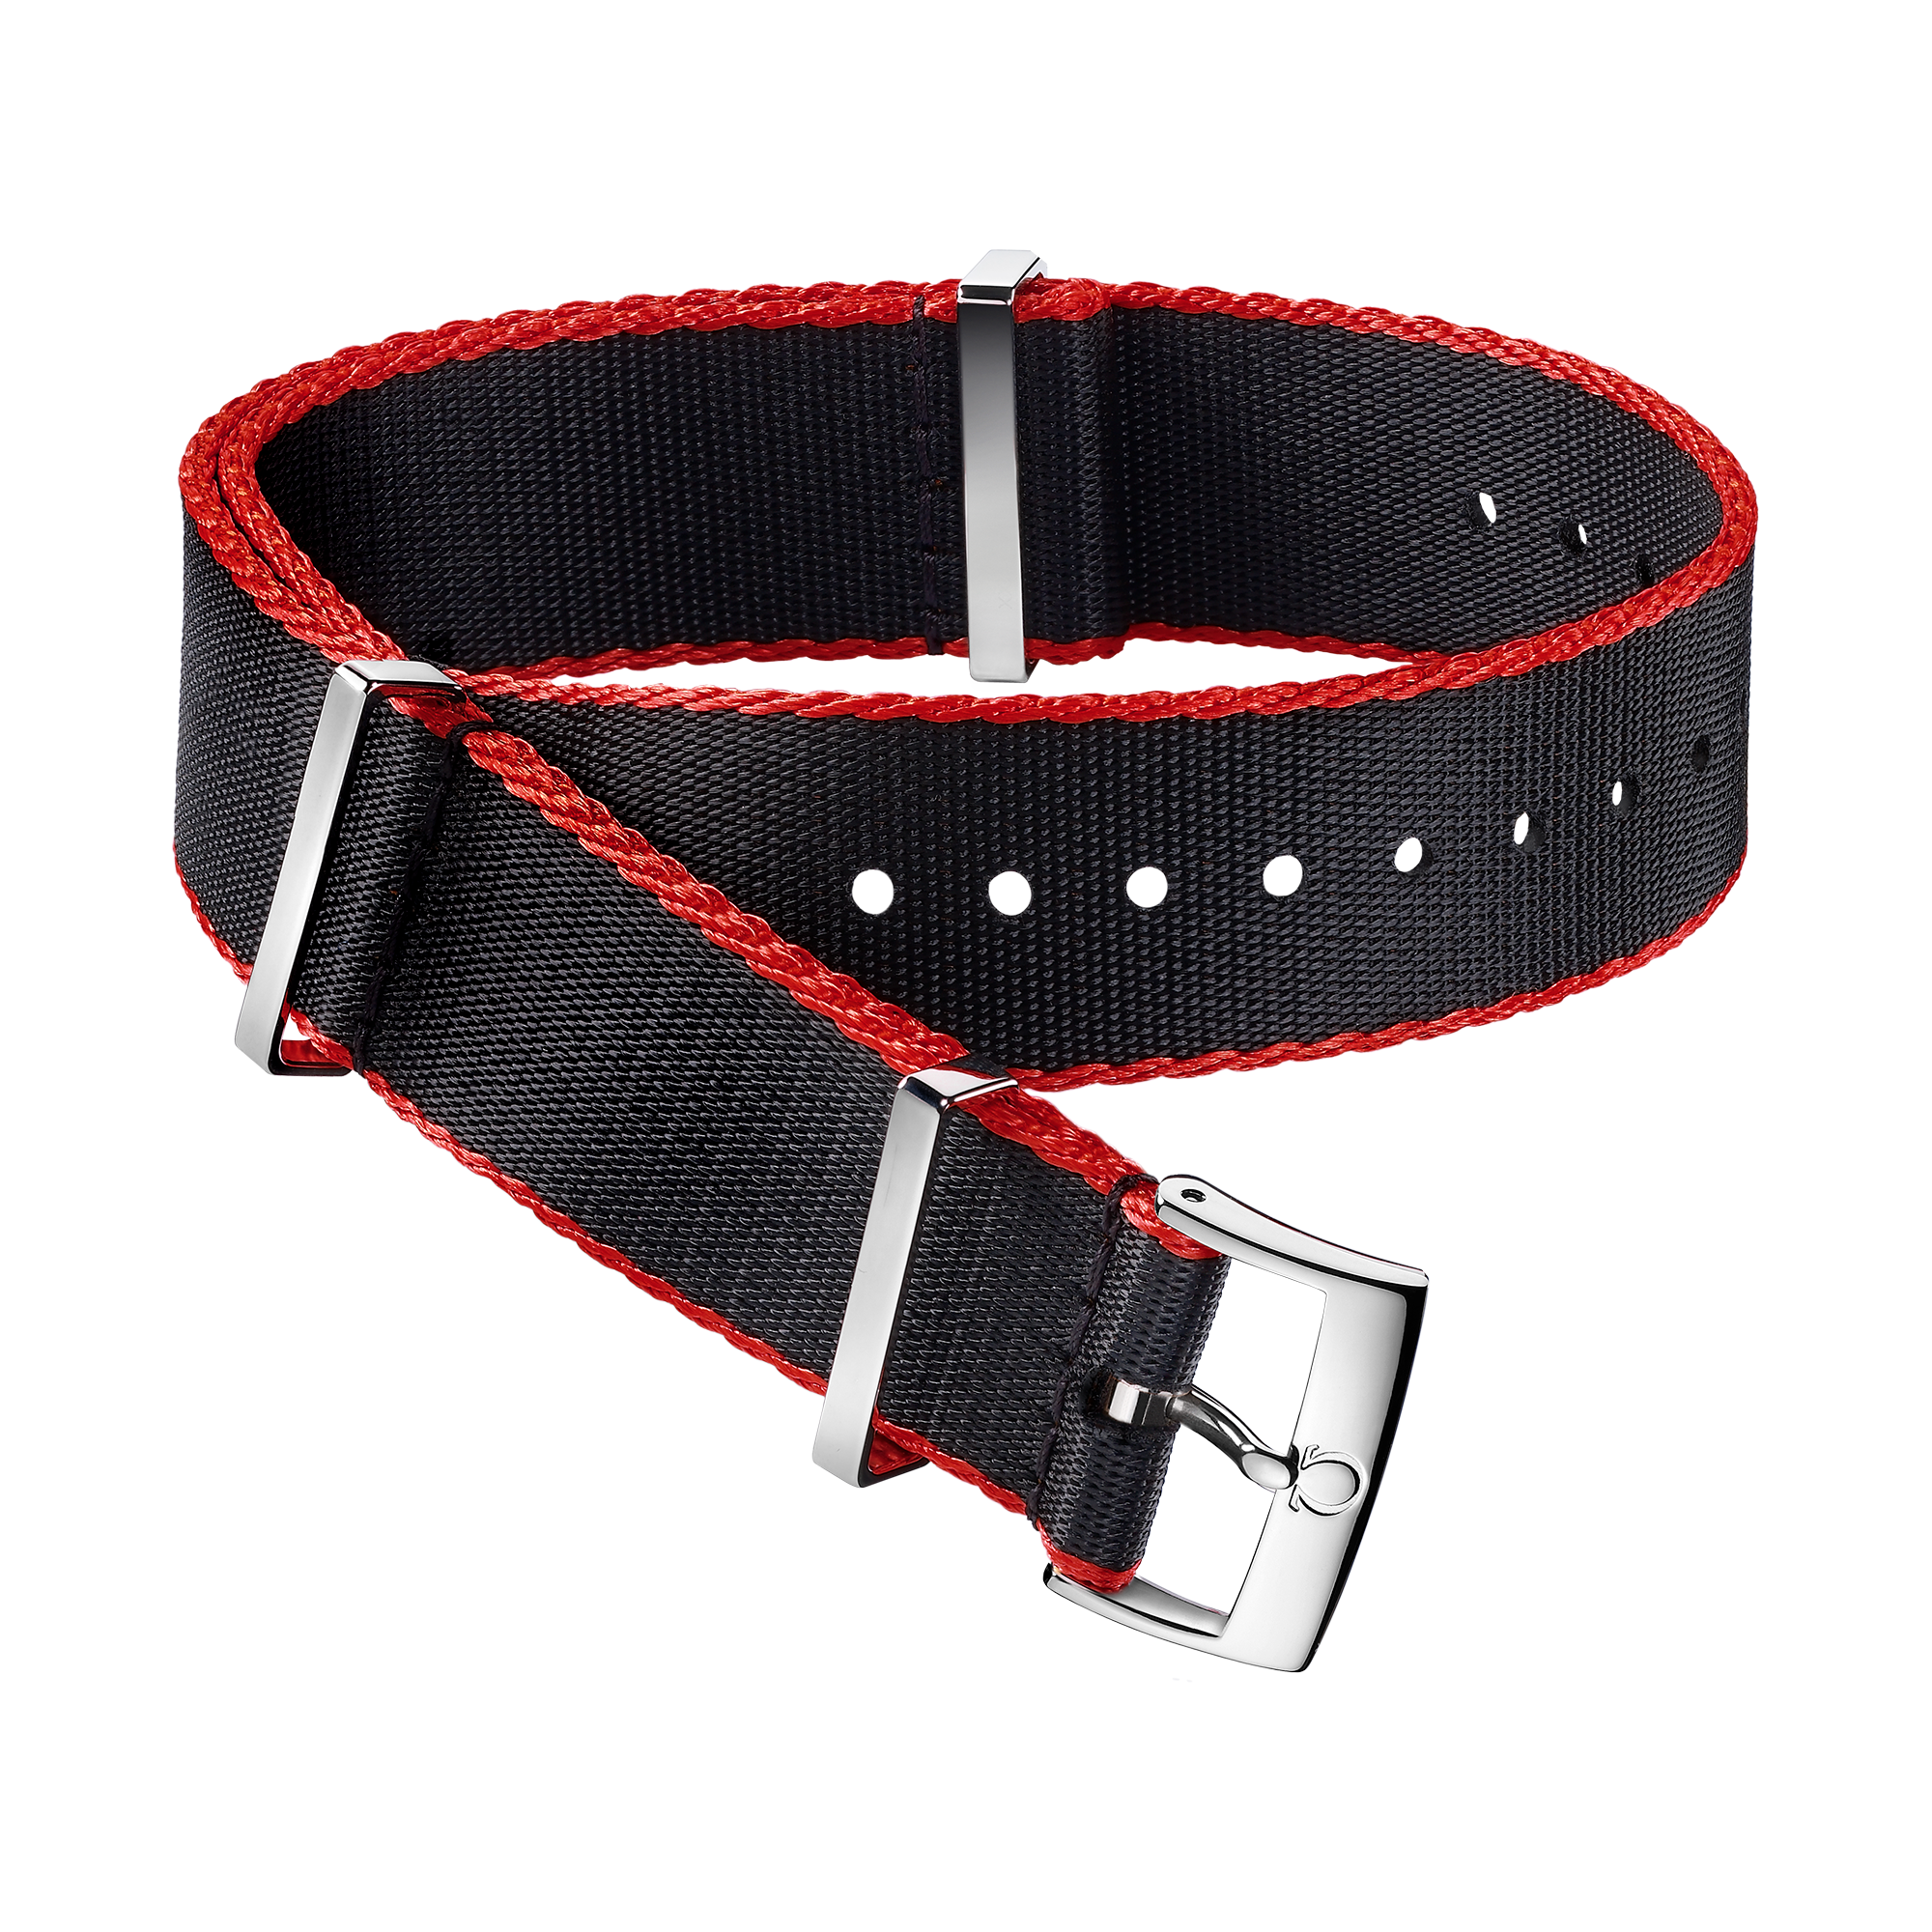 Bracelet NATO - Bracelet en polyamide noir aux bordures rouges - 031ZSZ002041